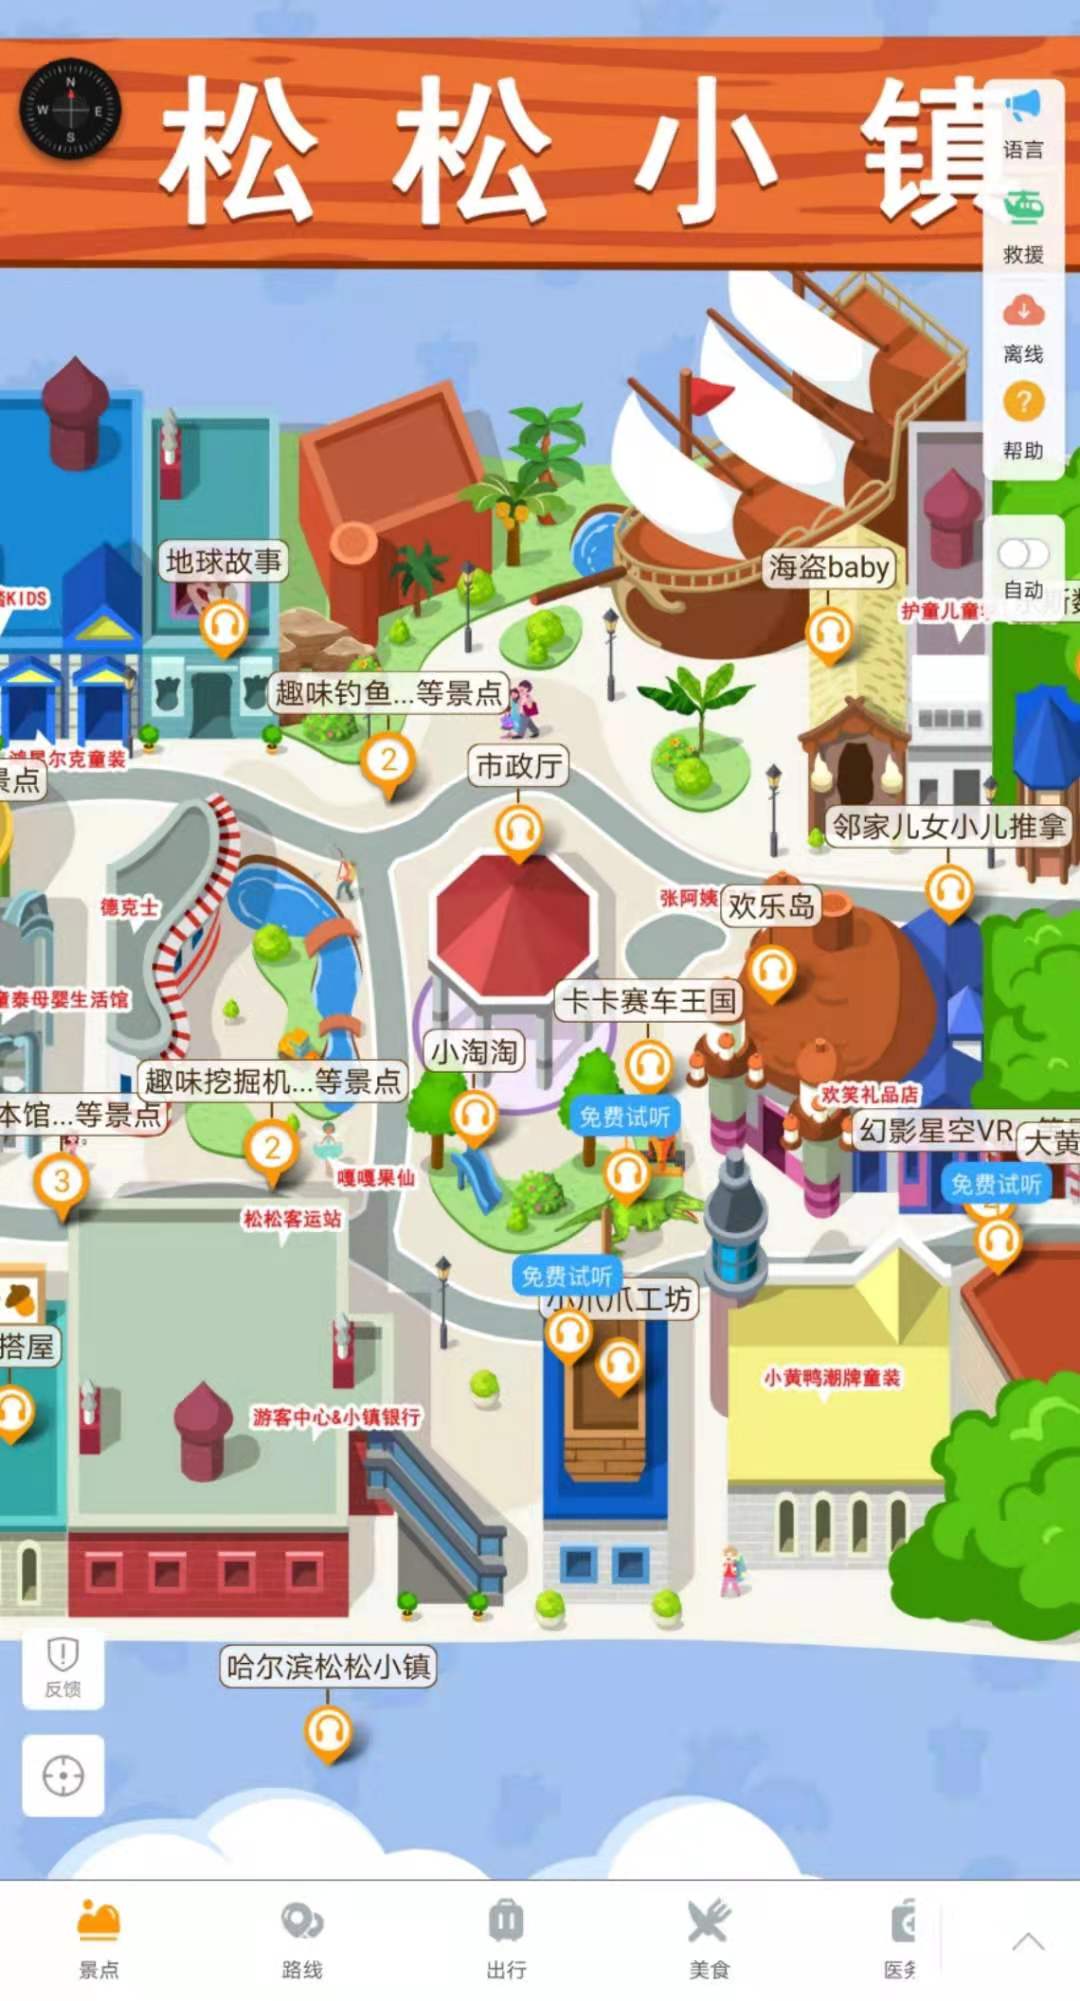 哈尔滨松松小镇手绘地图.jpg